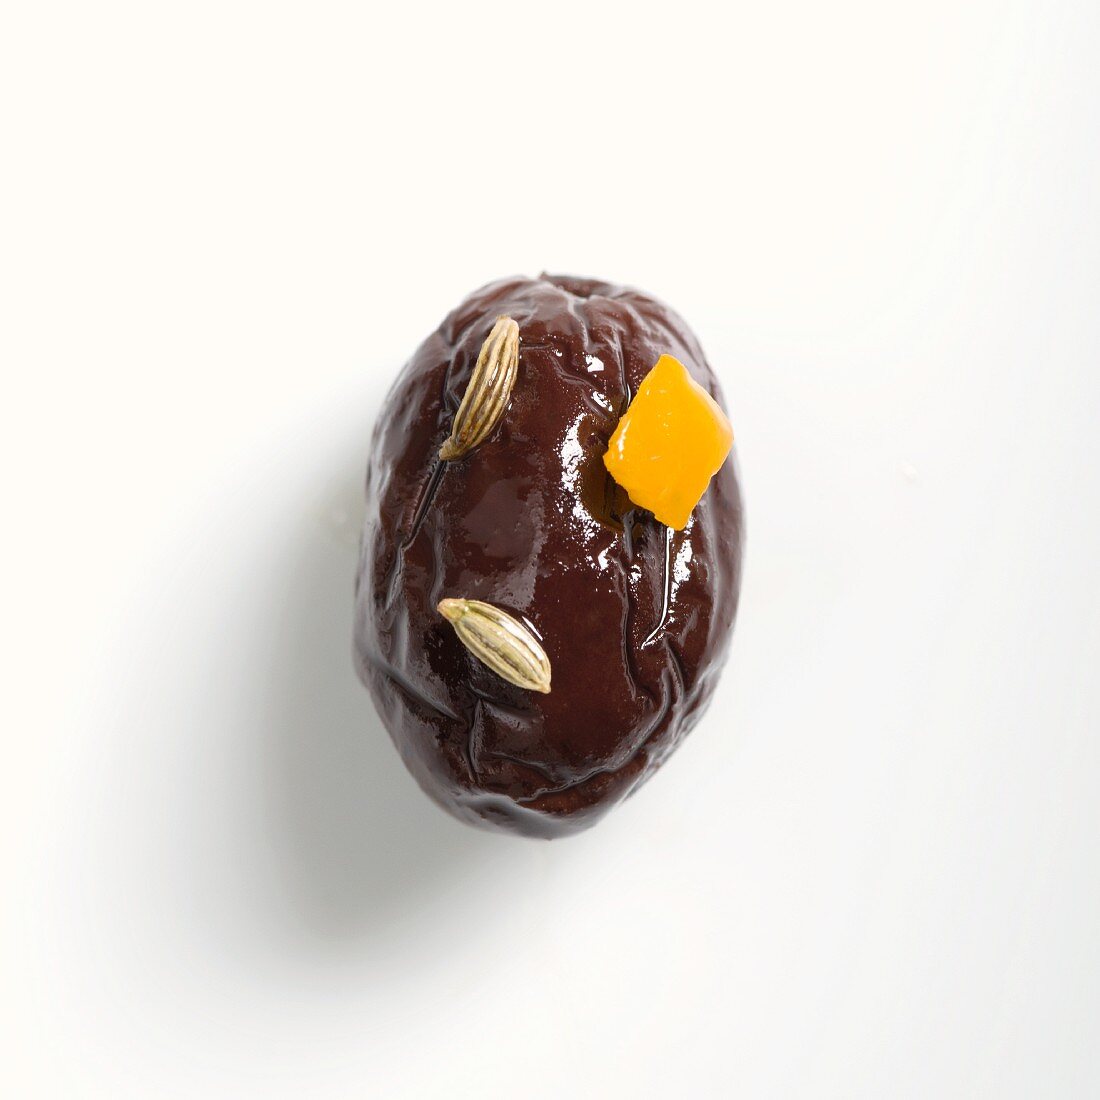 Eine Salentina Olive mit Orange und Fenchelsamen